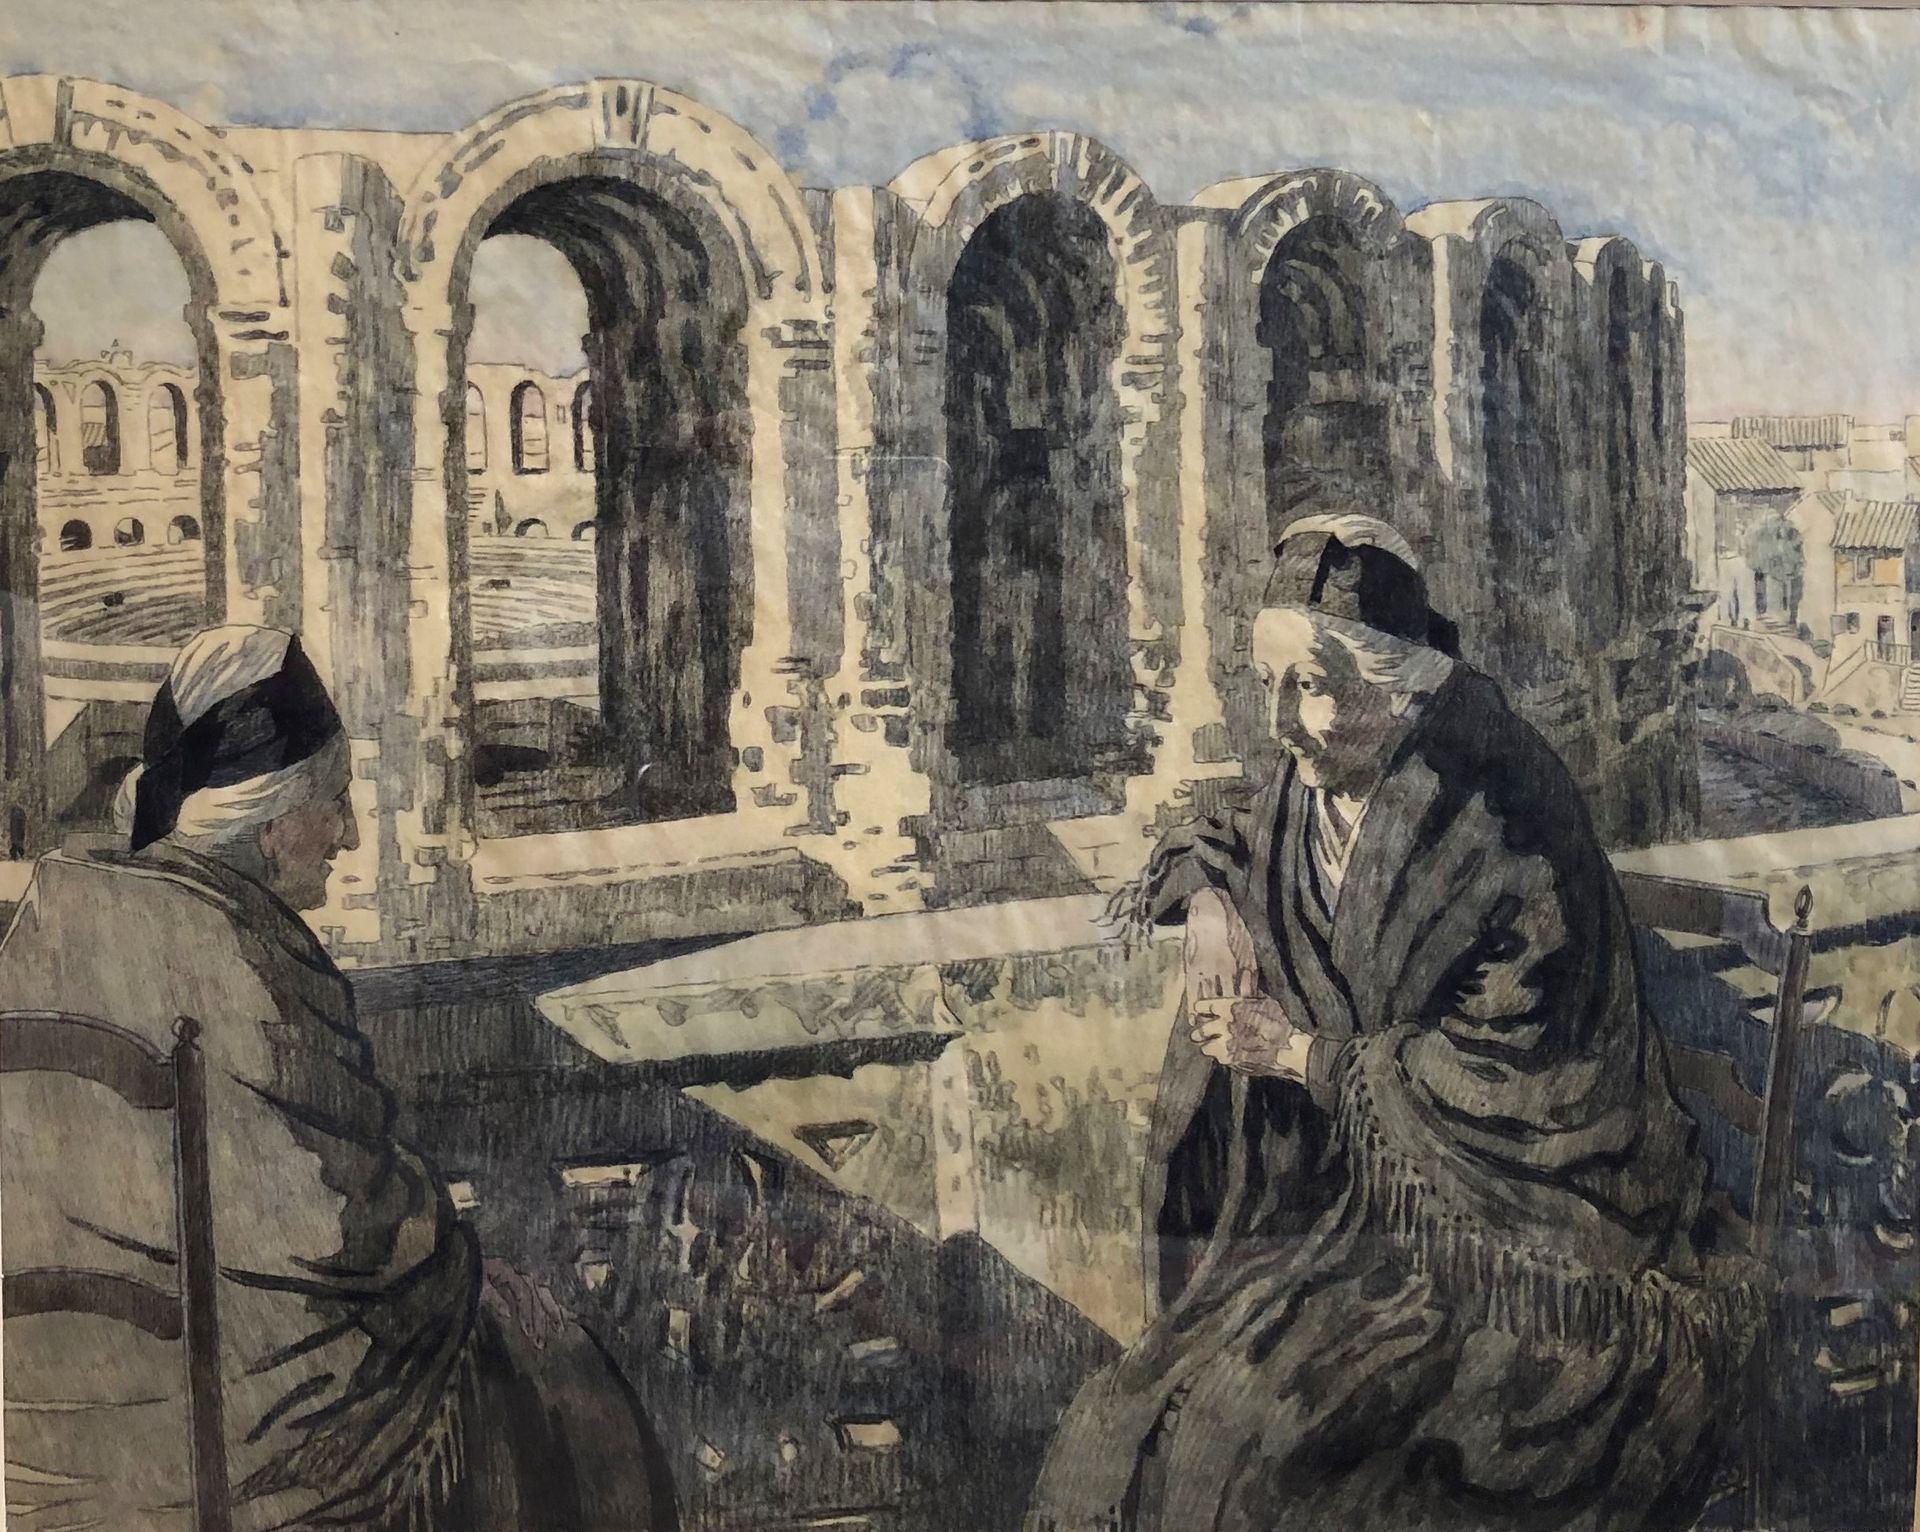 Null 莱奥-莱利(1872-1947)

阿尔勒人和阿雷纳人

水彩画...

40 x 50厘米

木质框架和玻璃下。